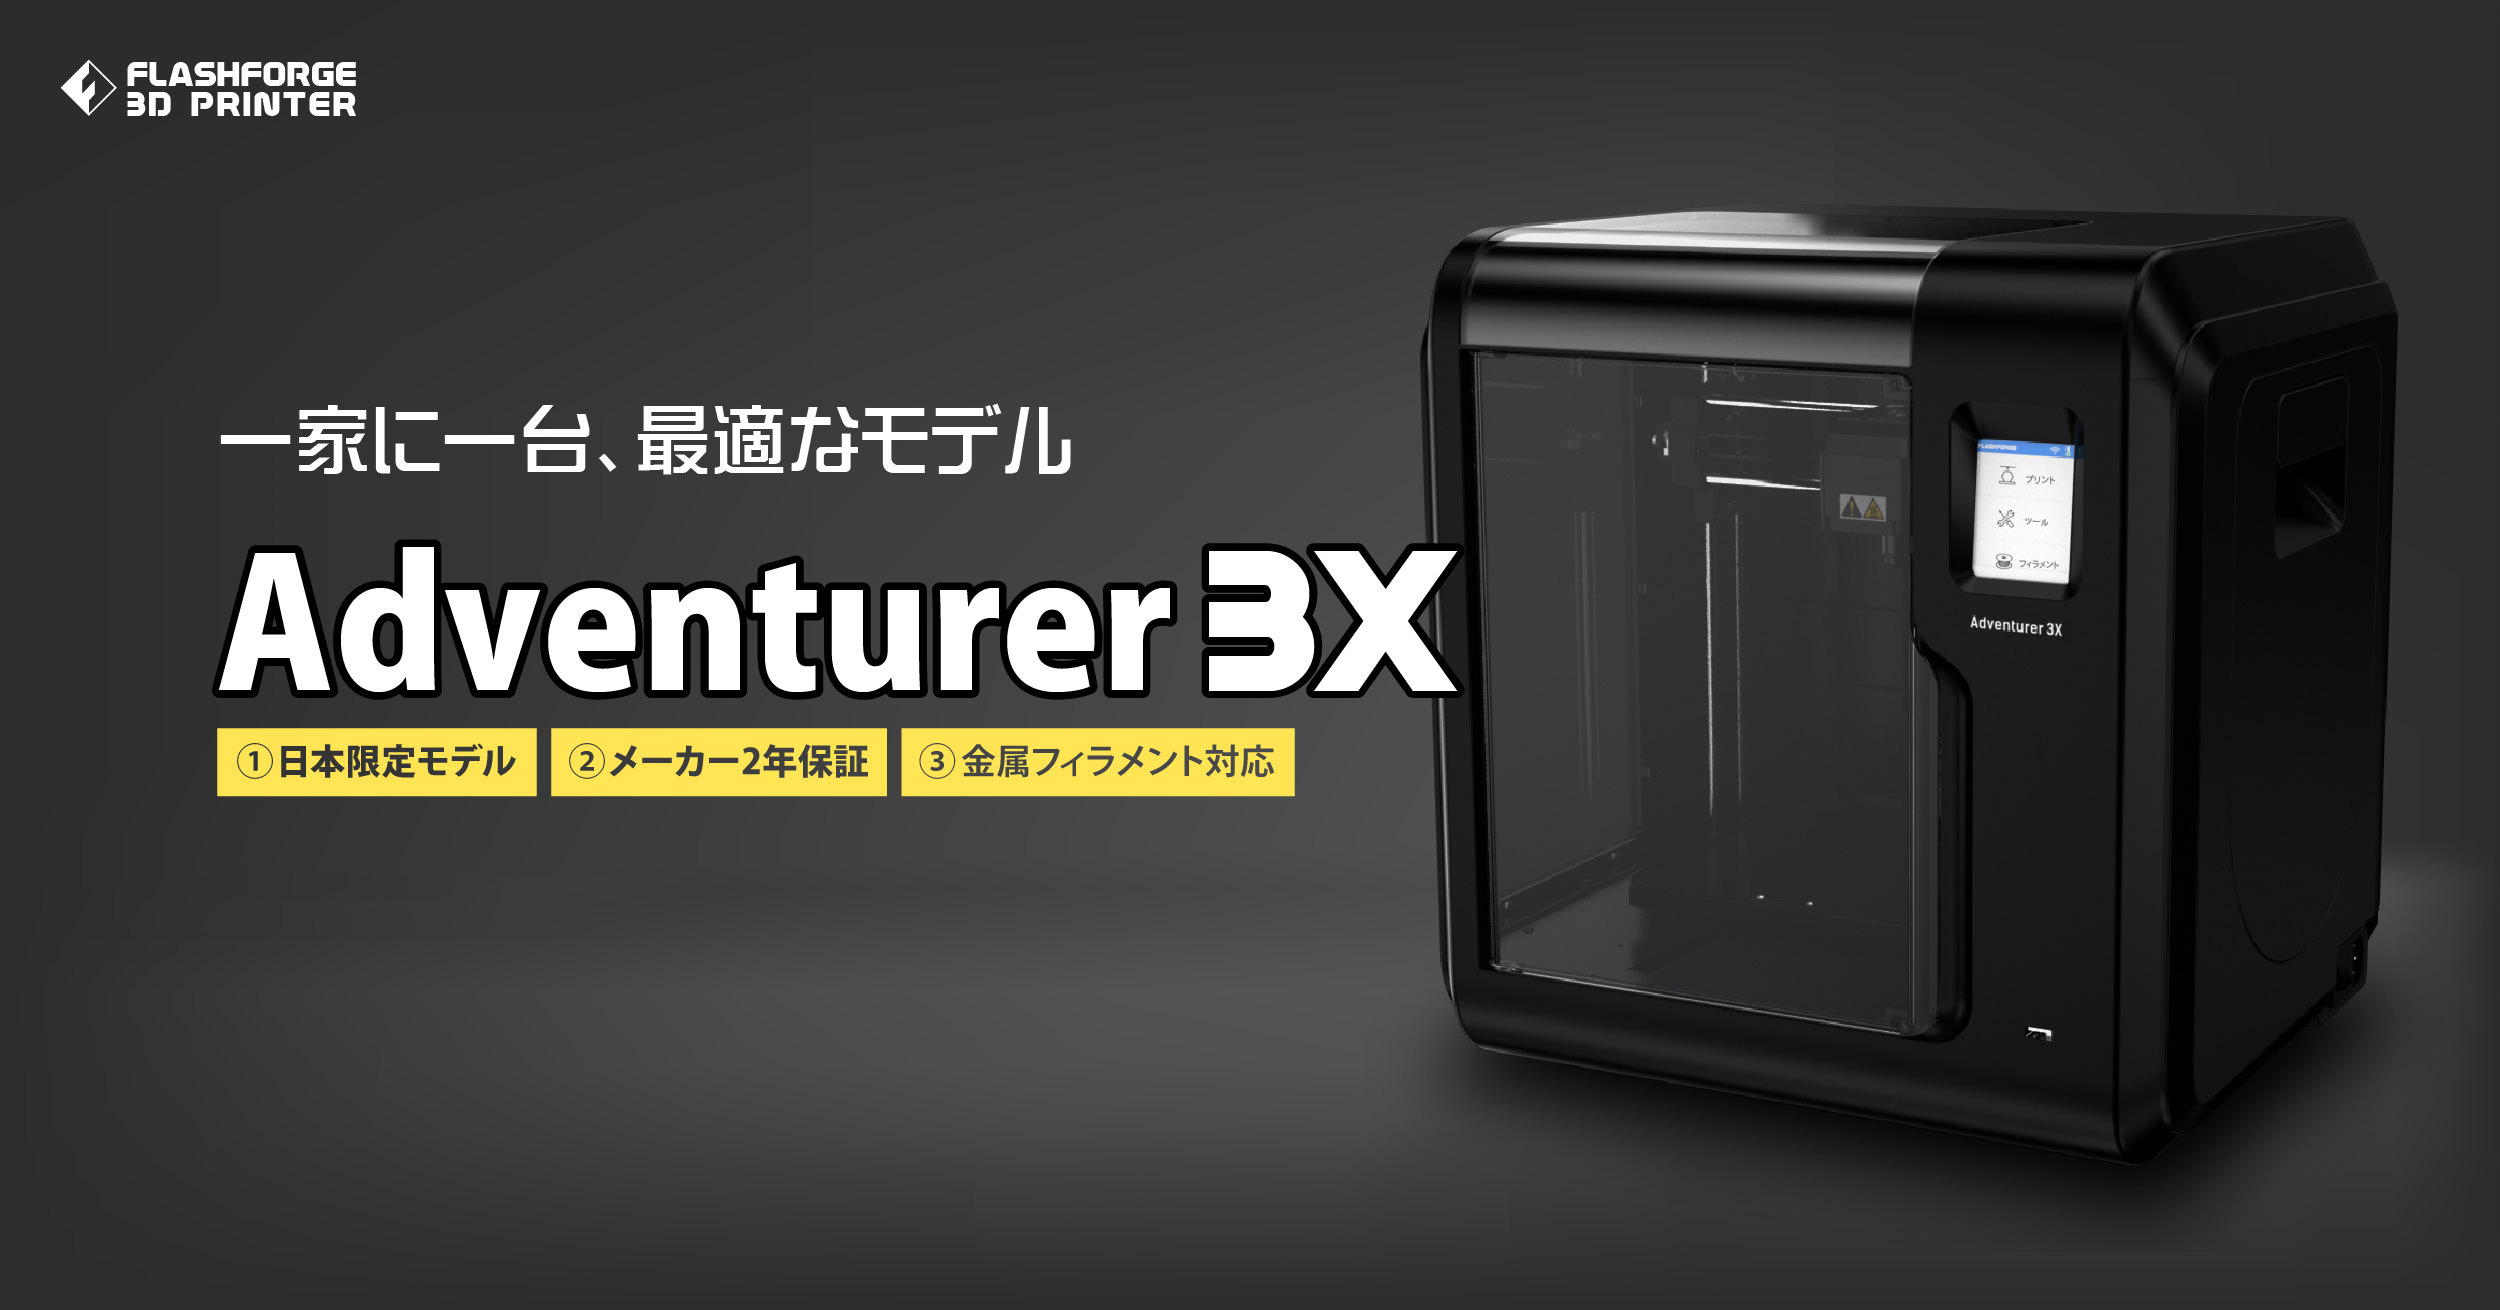 金属フィラメント対応の低価格3Dプリンタ「Adventurer3X」販売開始